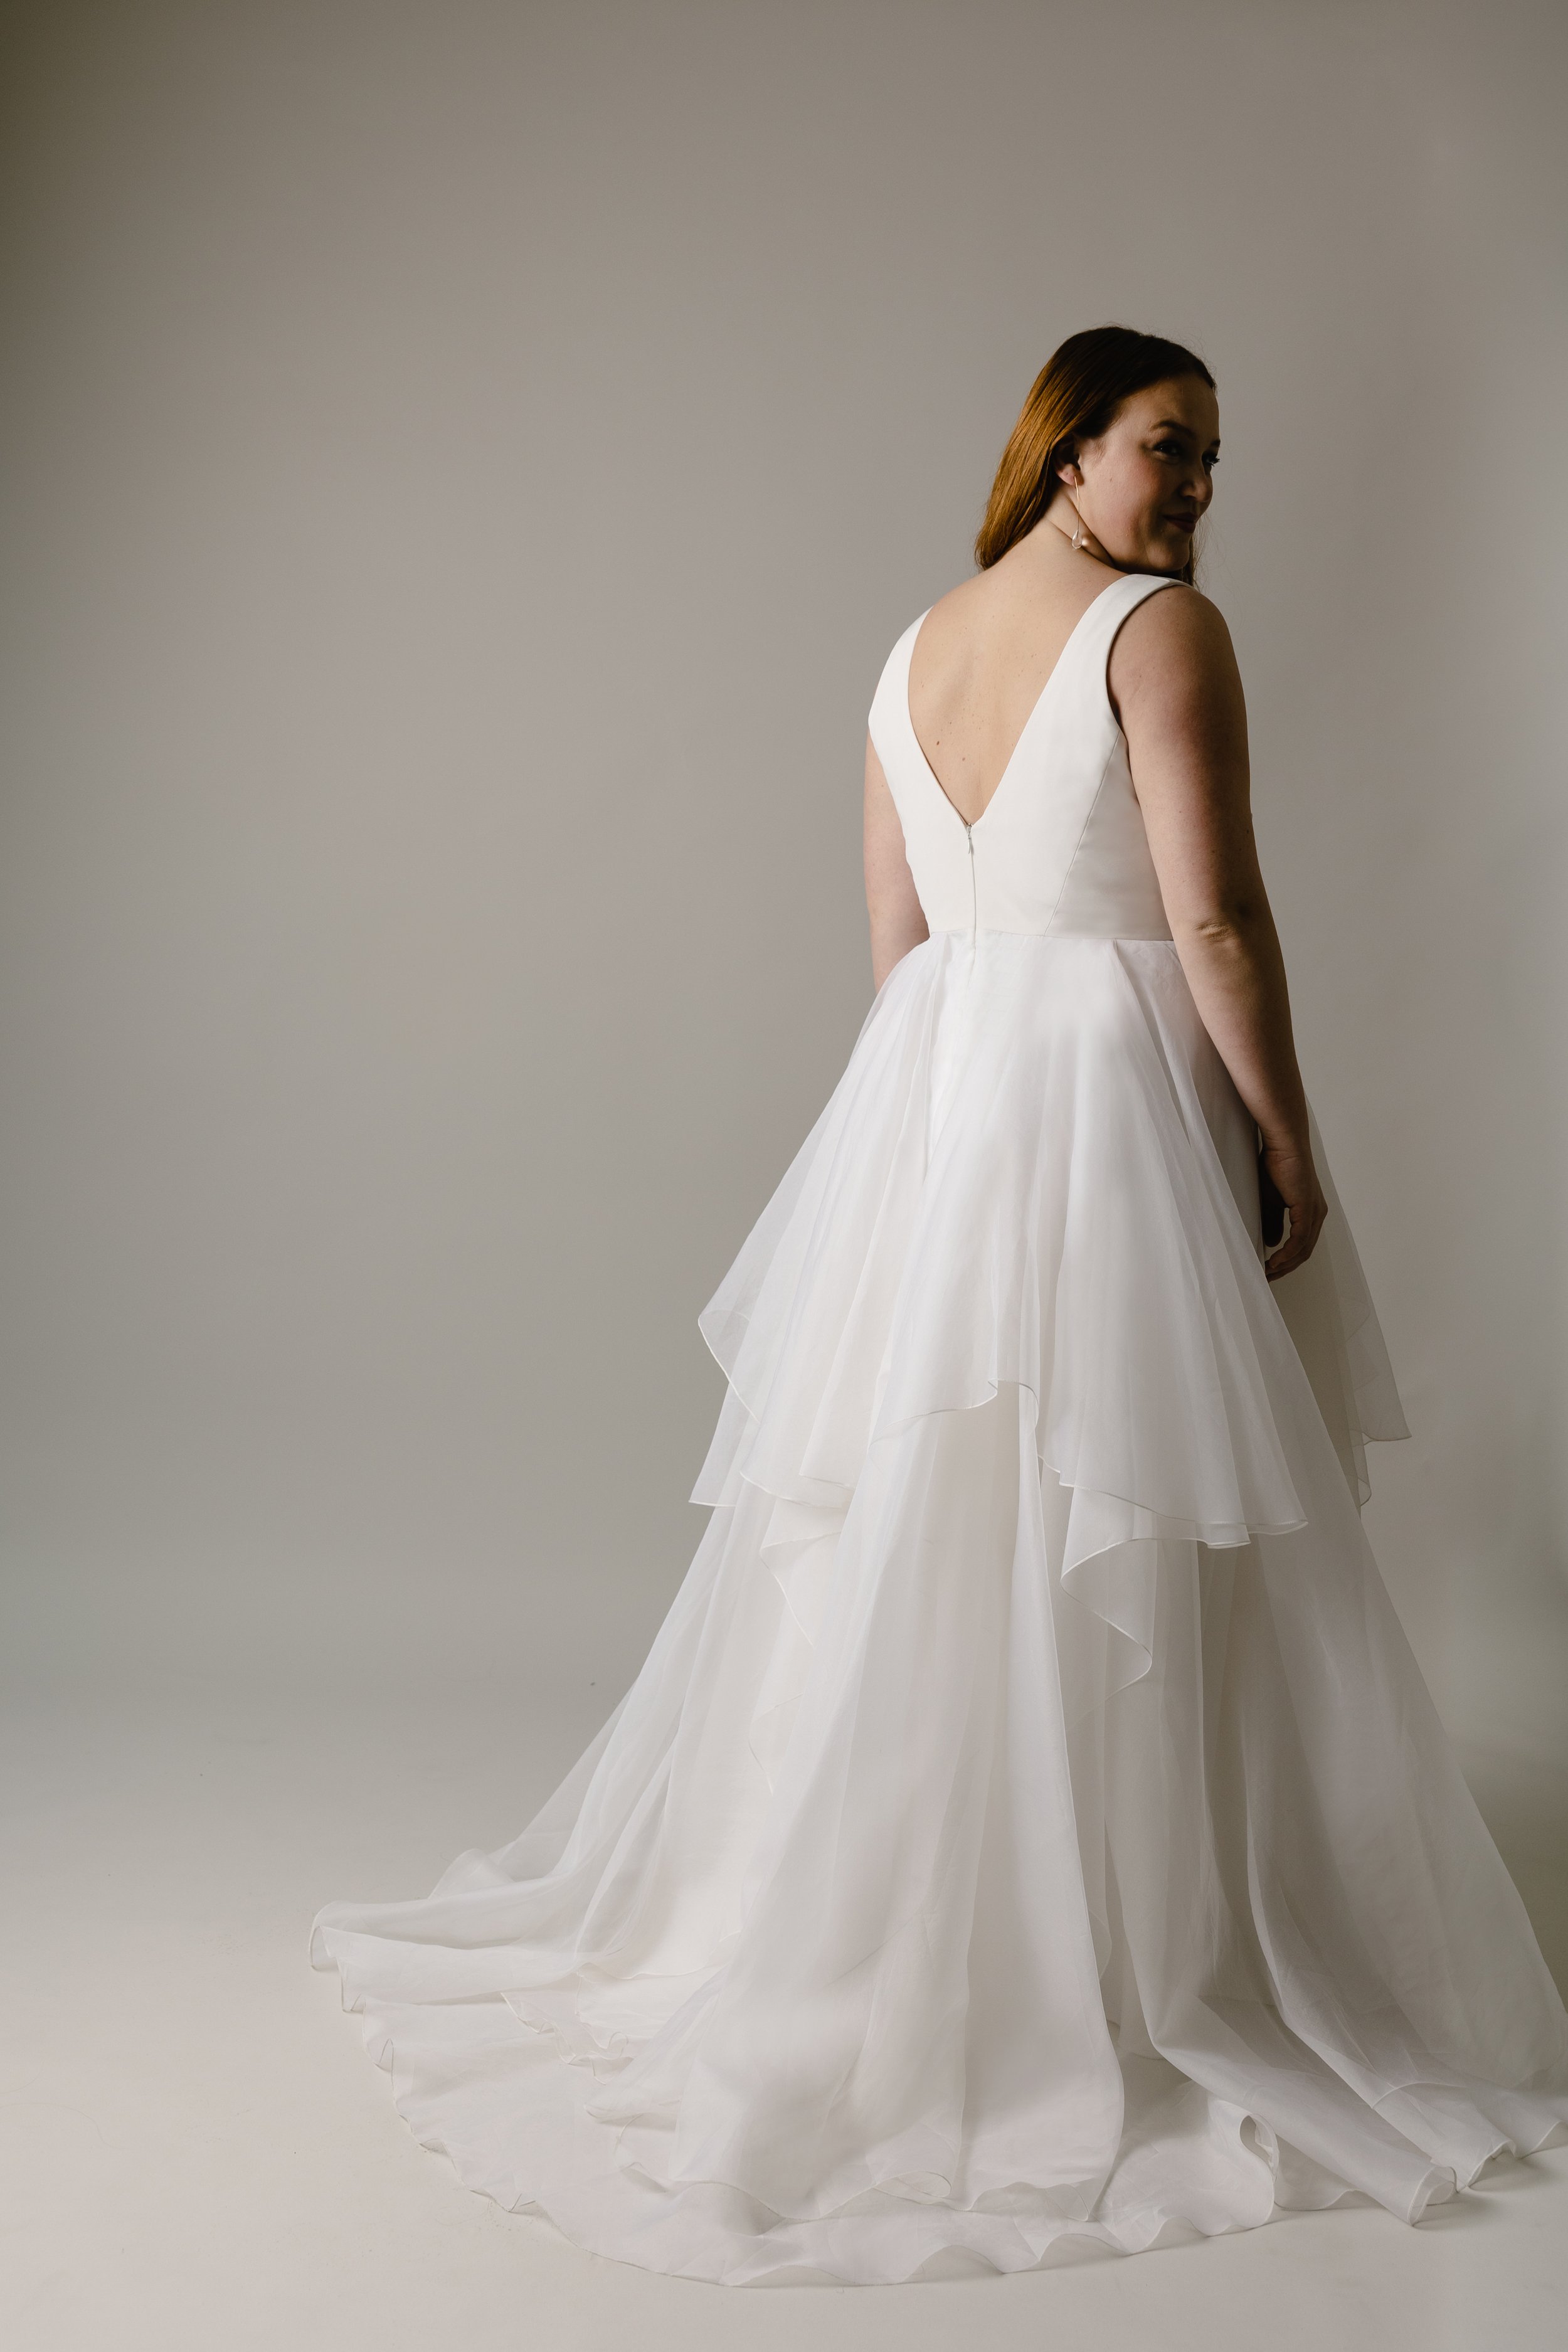 Ayr v-neck wedding dress with organza layers2 web.jpg